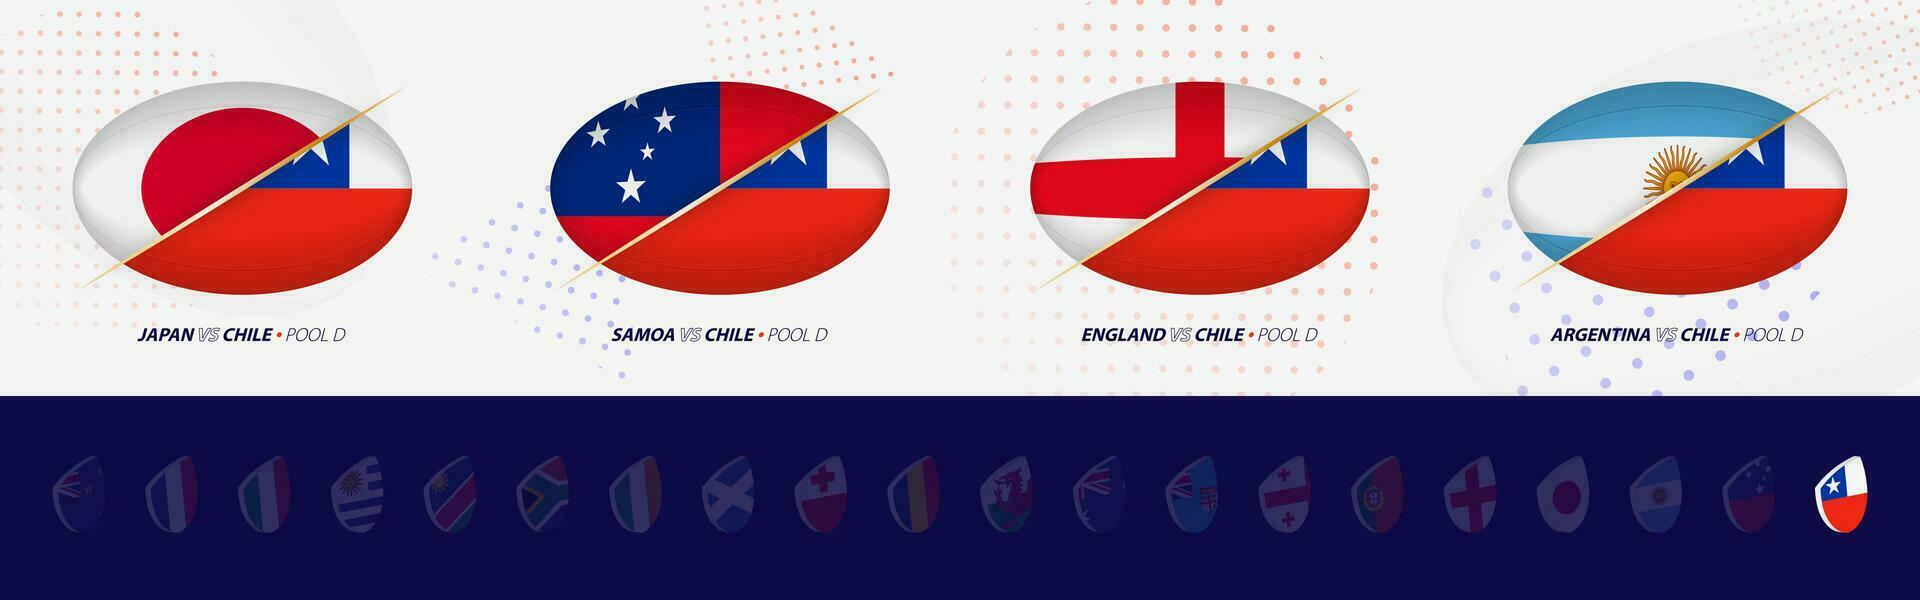 rugby competencia íconos de Chile rugby nacional equipo, todas cuatro partidos icono en piscina. vector